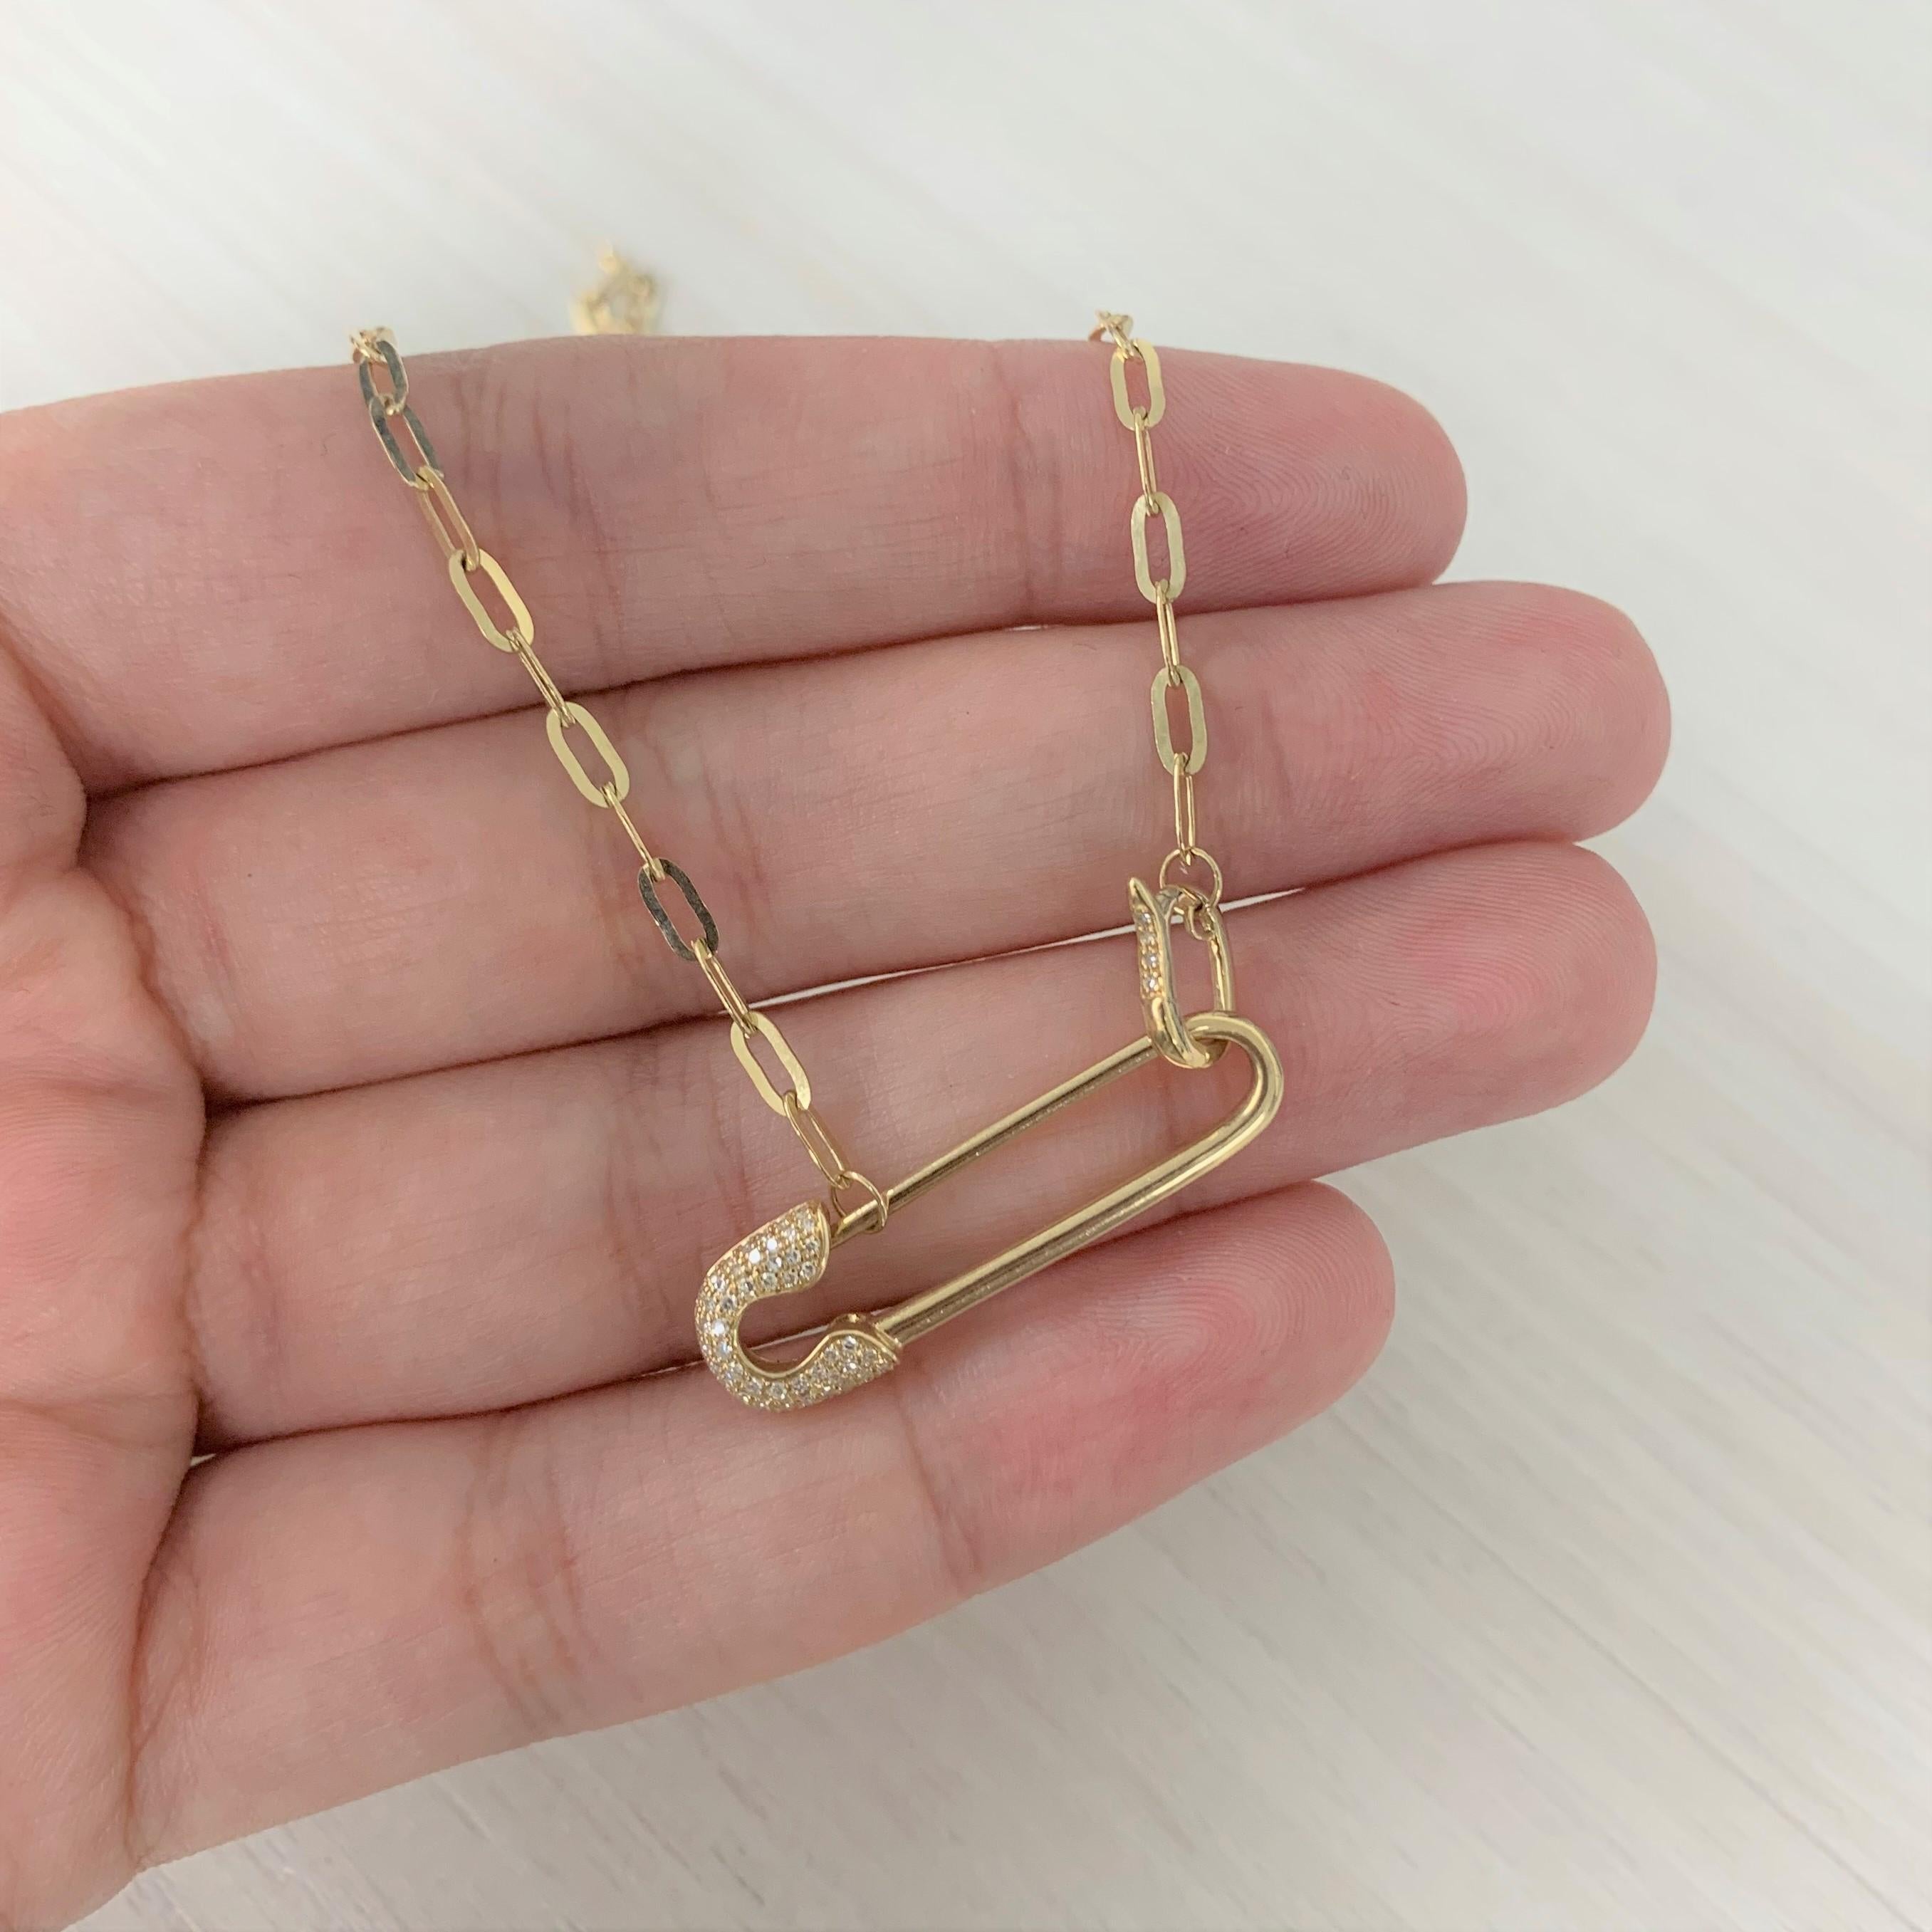 safety pin necklace swarovski